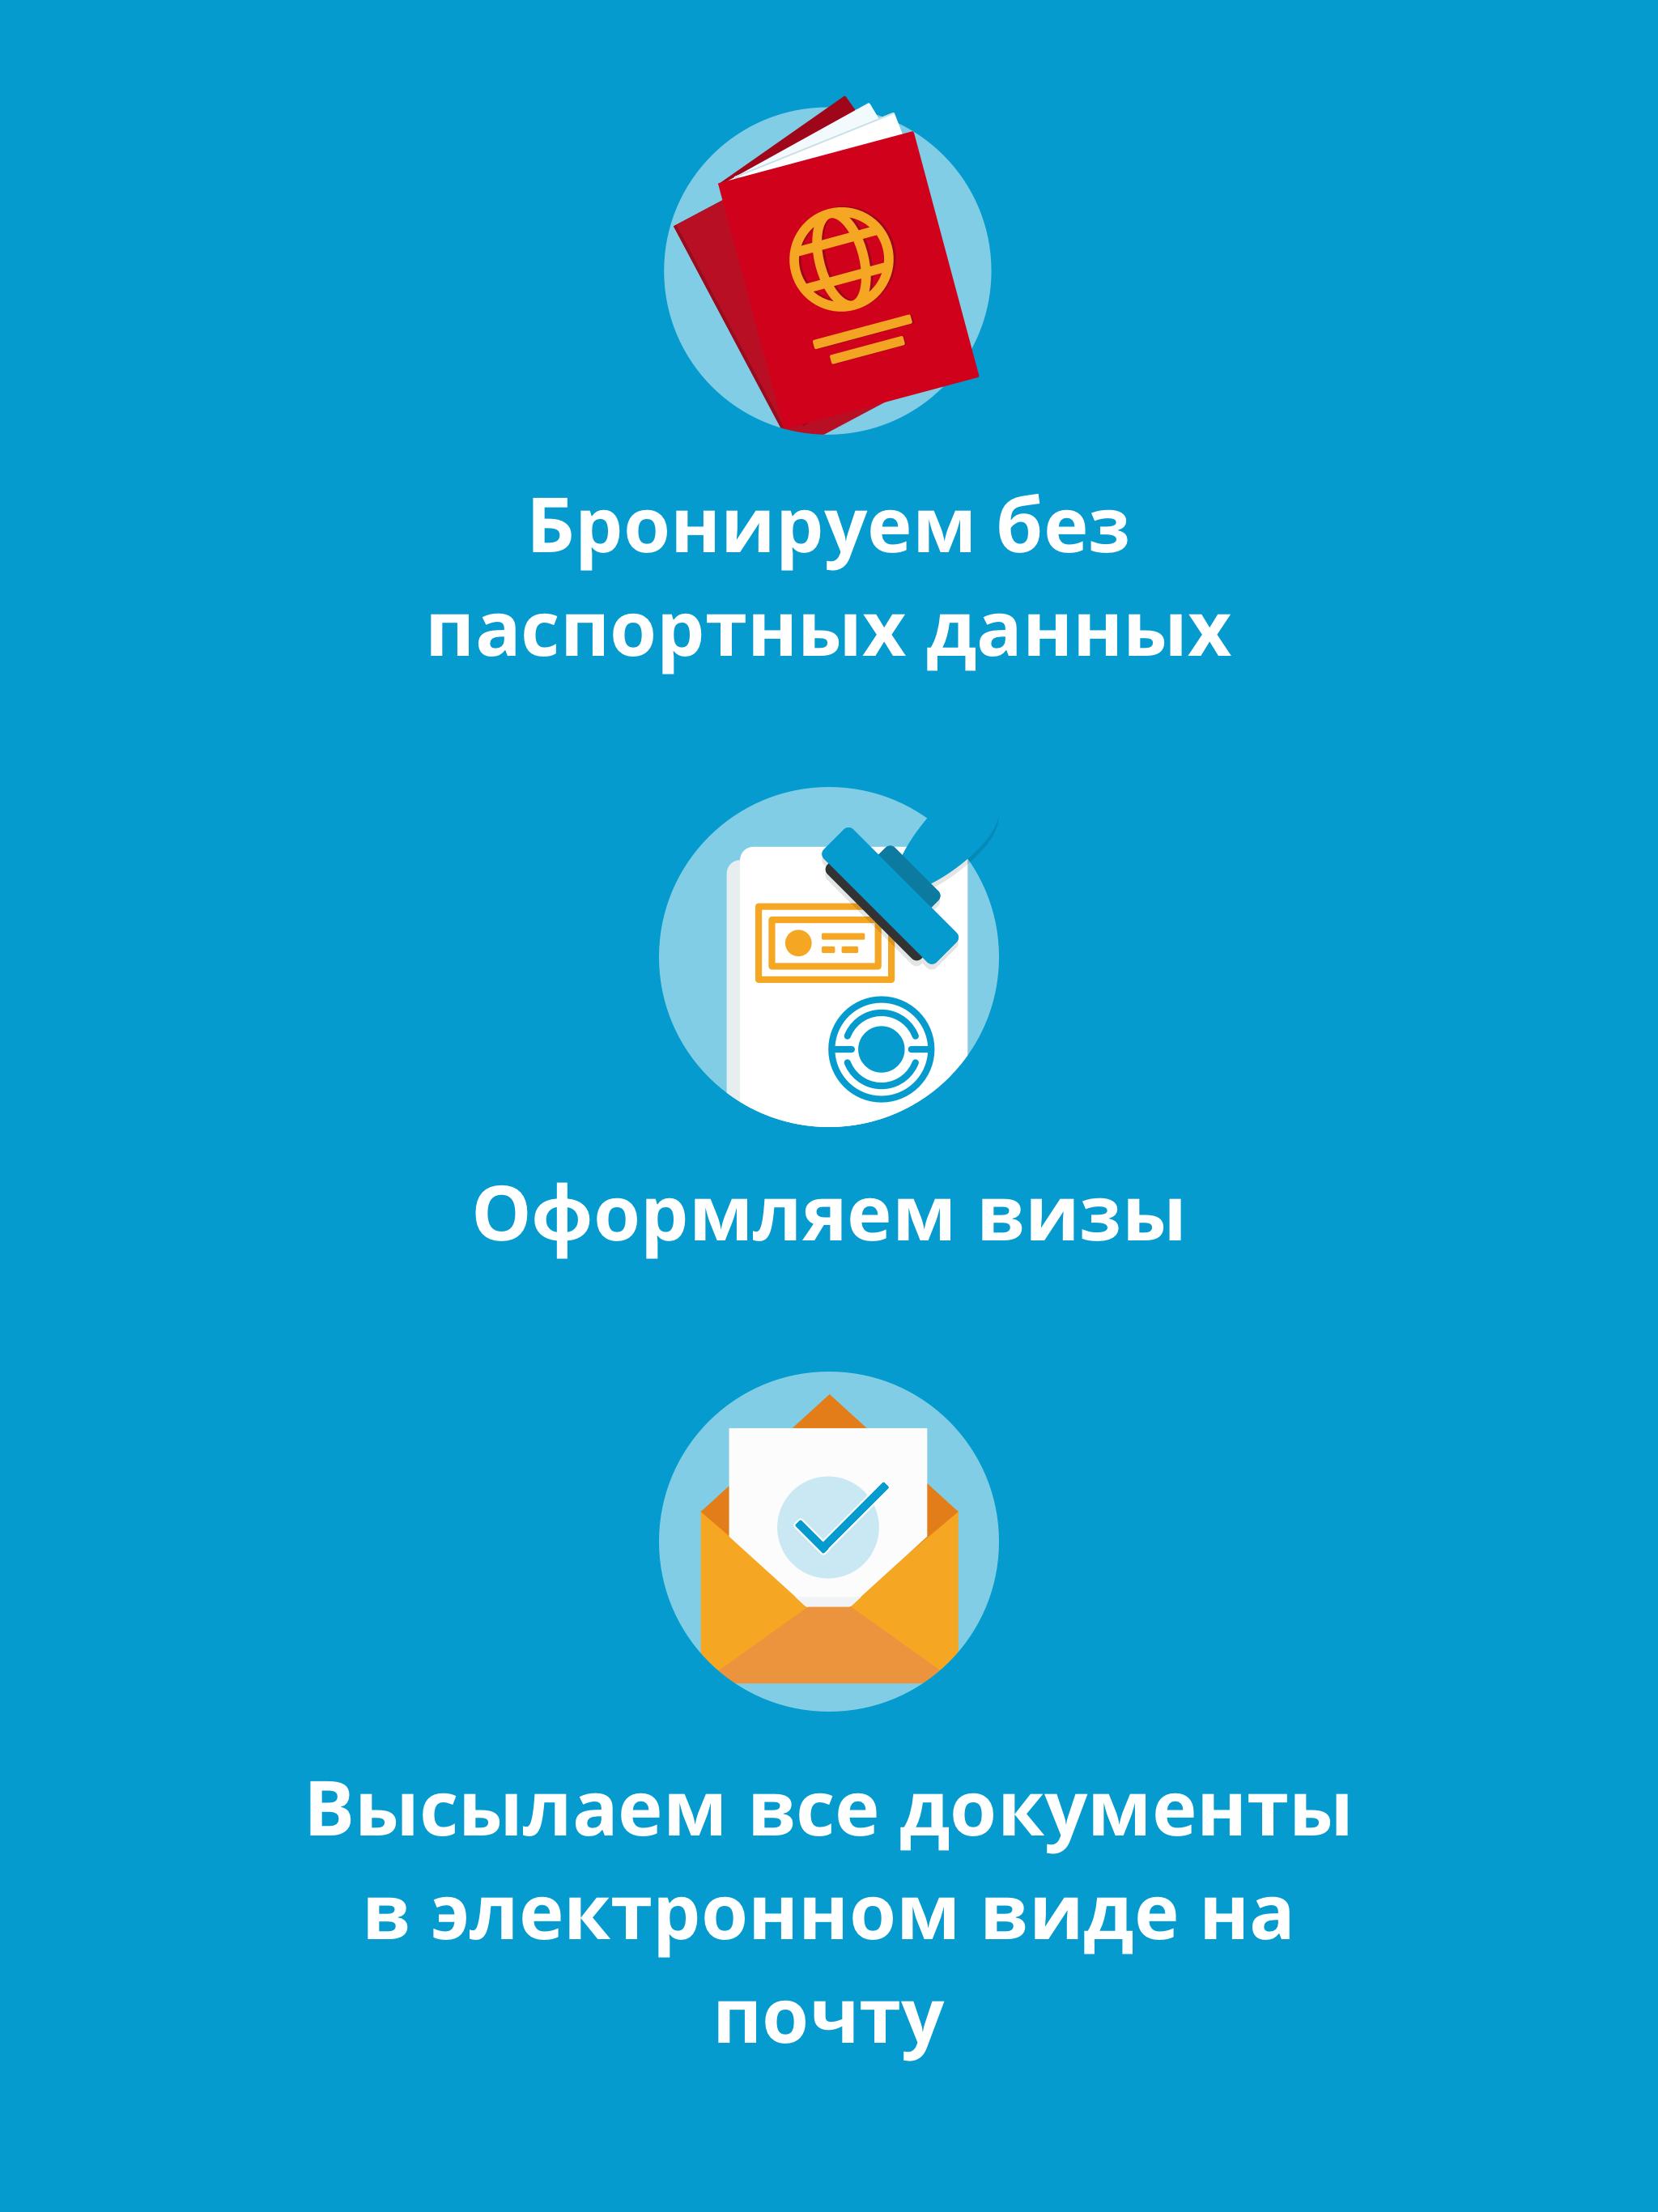 Travelata.ru Все горящие туры и путевки онлайн 3.6.7 Screenshot 10